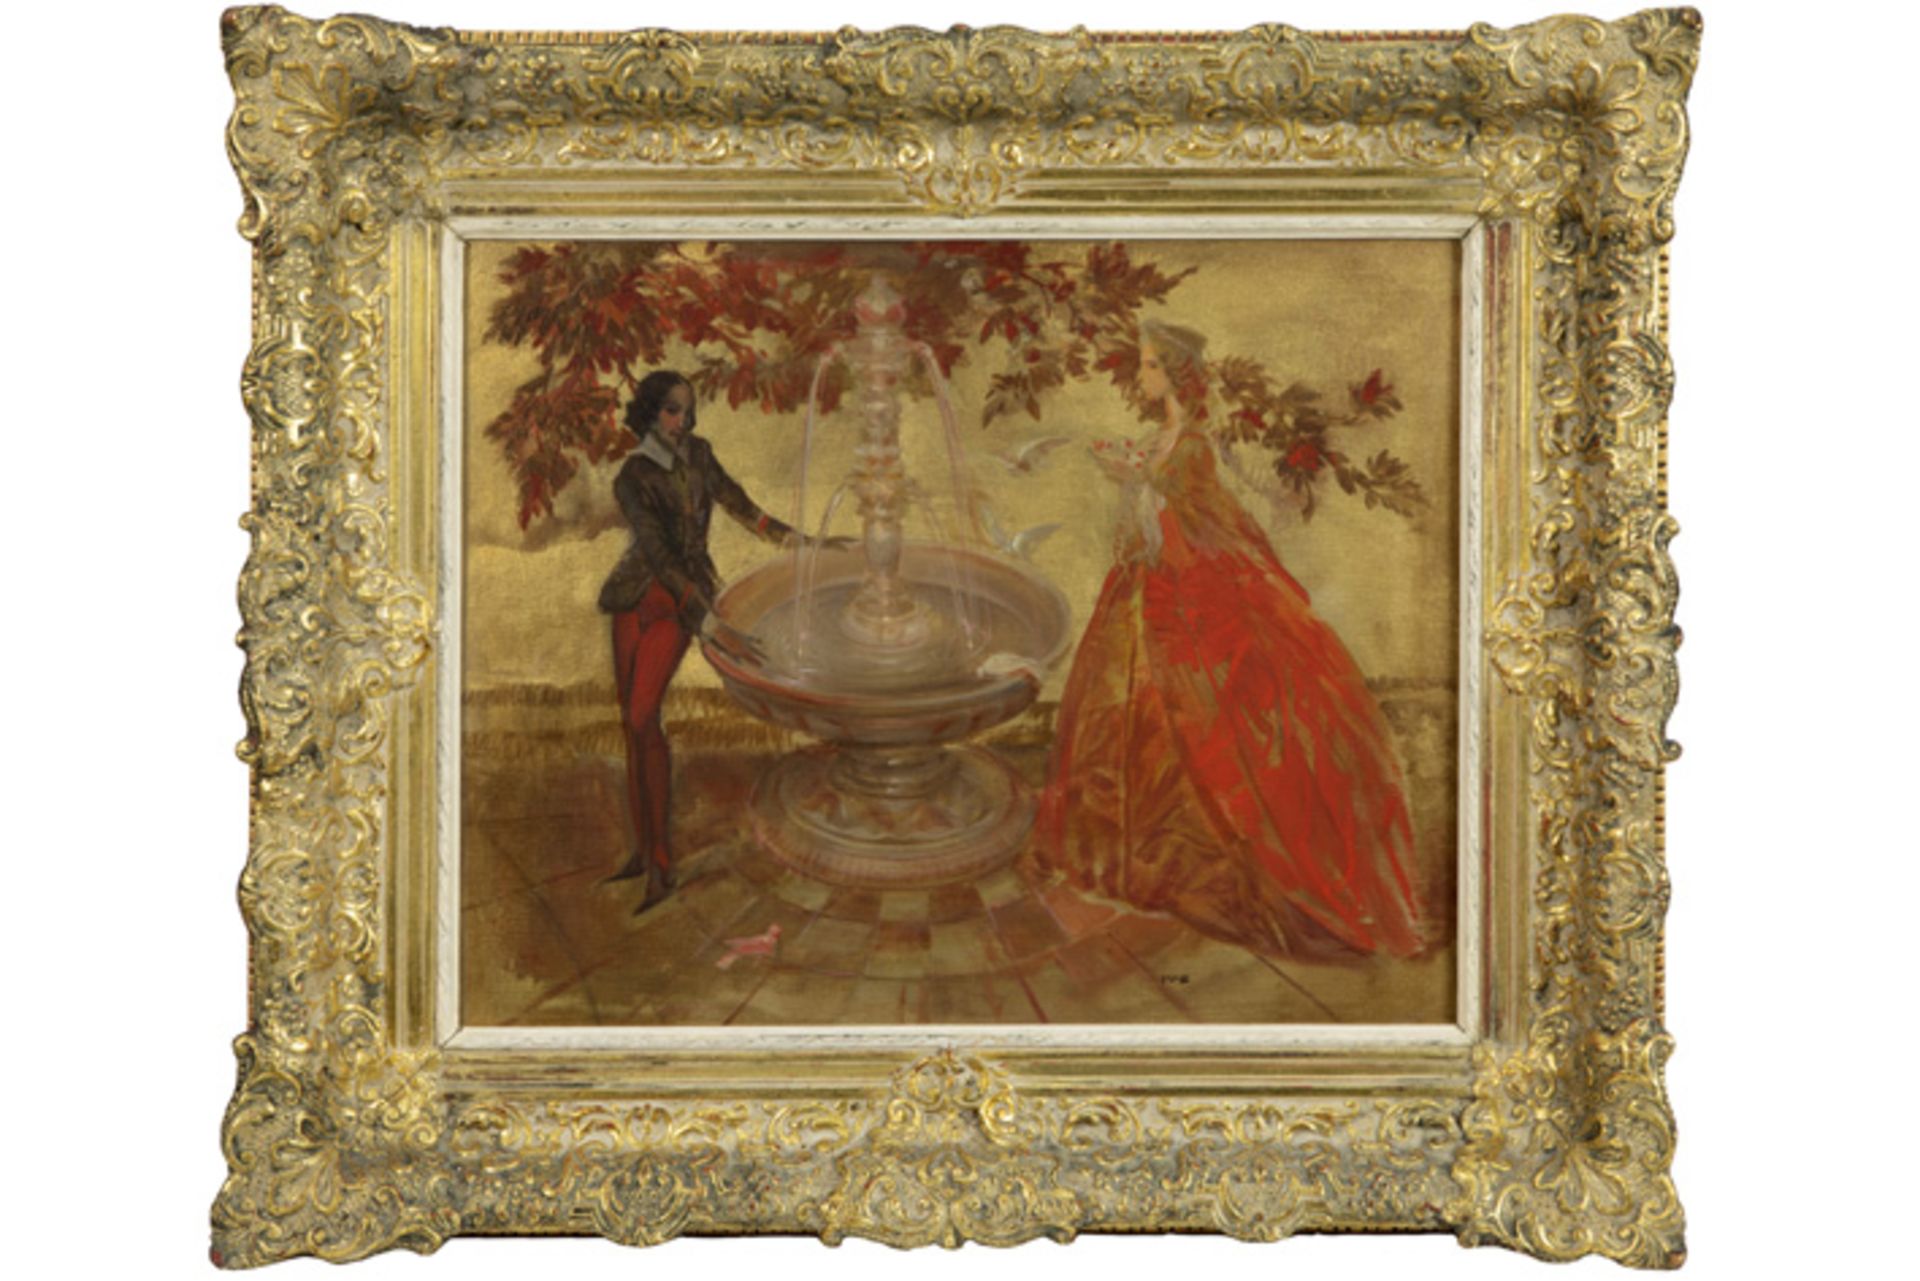 VAN BELLE KAREL (1884 - 1959) olieverfschilderij op doek : "Man en vrouw aan fontein" - 52 x 36 - Image 2 of 2